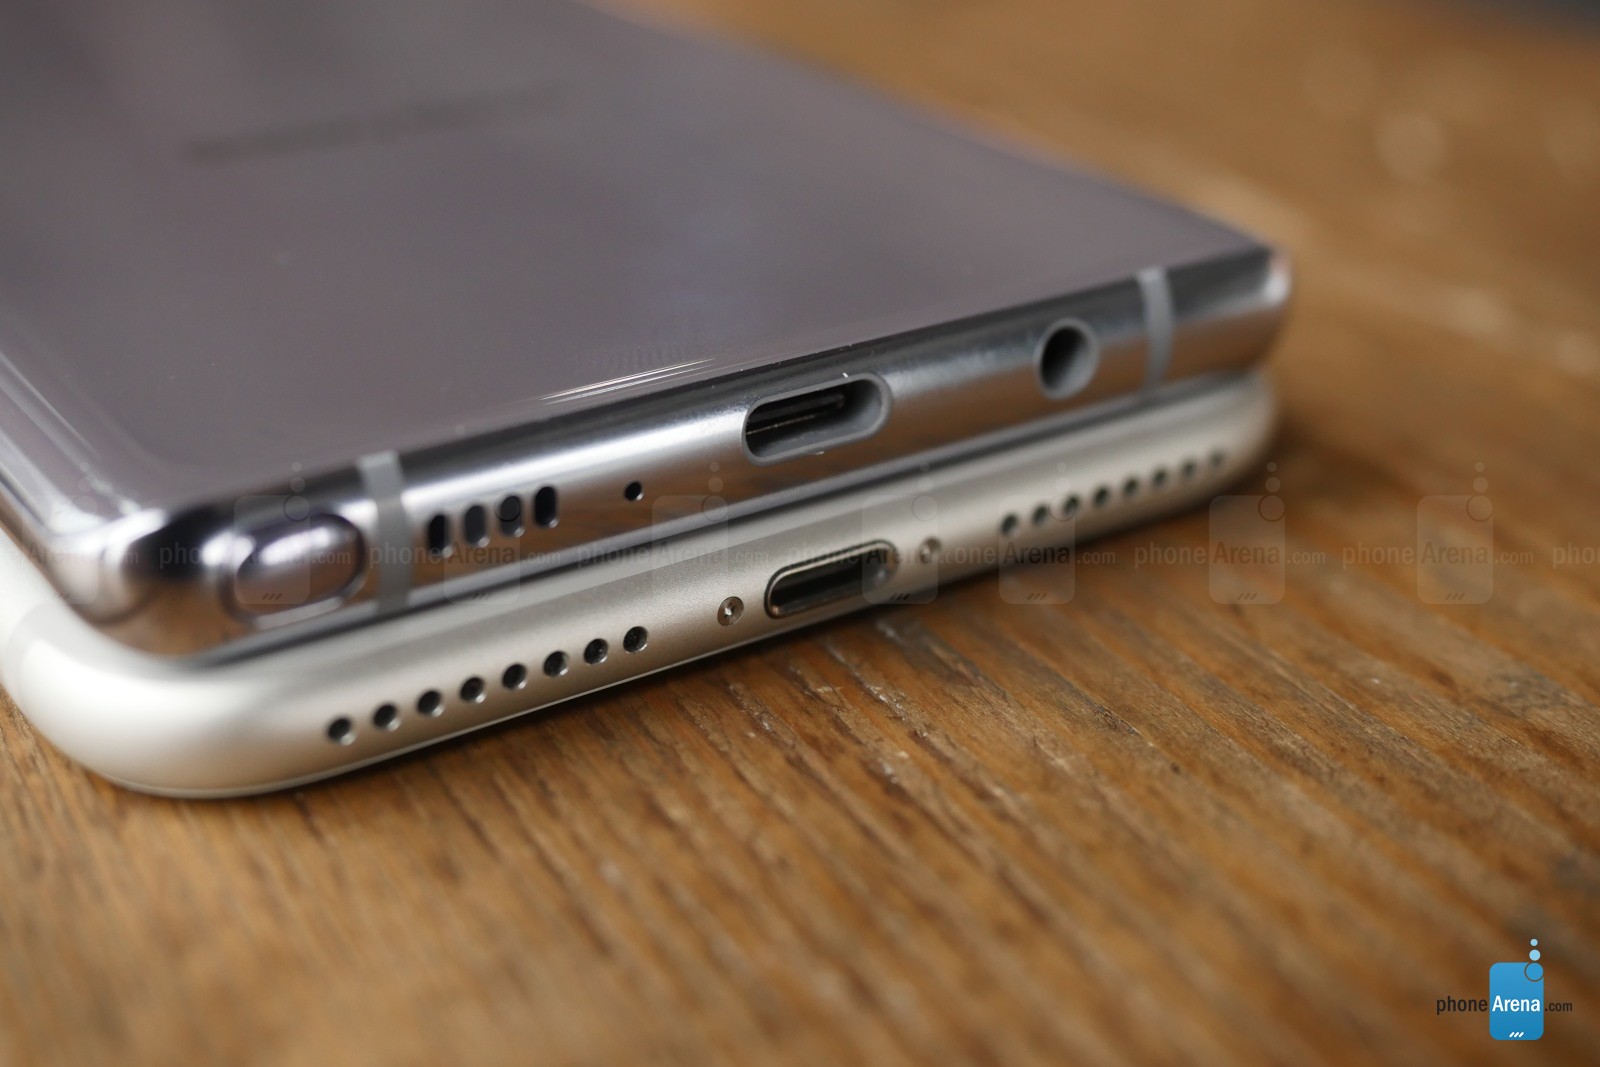 Comparación del Samsung Galaxy Note 8 y del iPhone 7 Plus 4